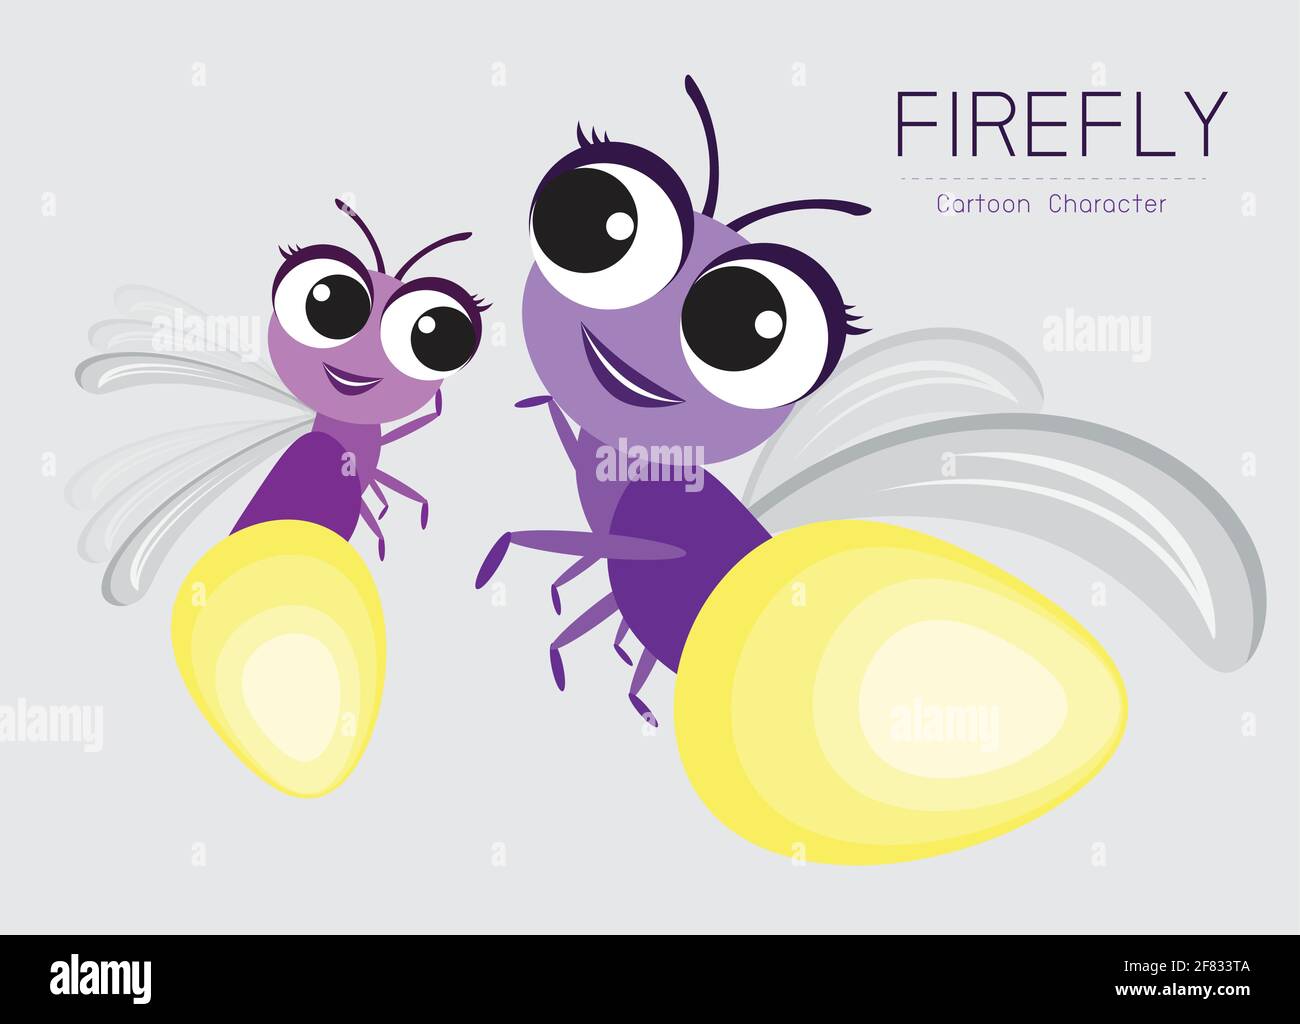 Firefly cartoon